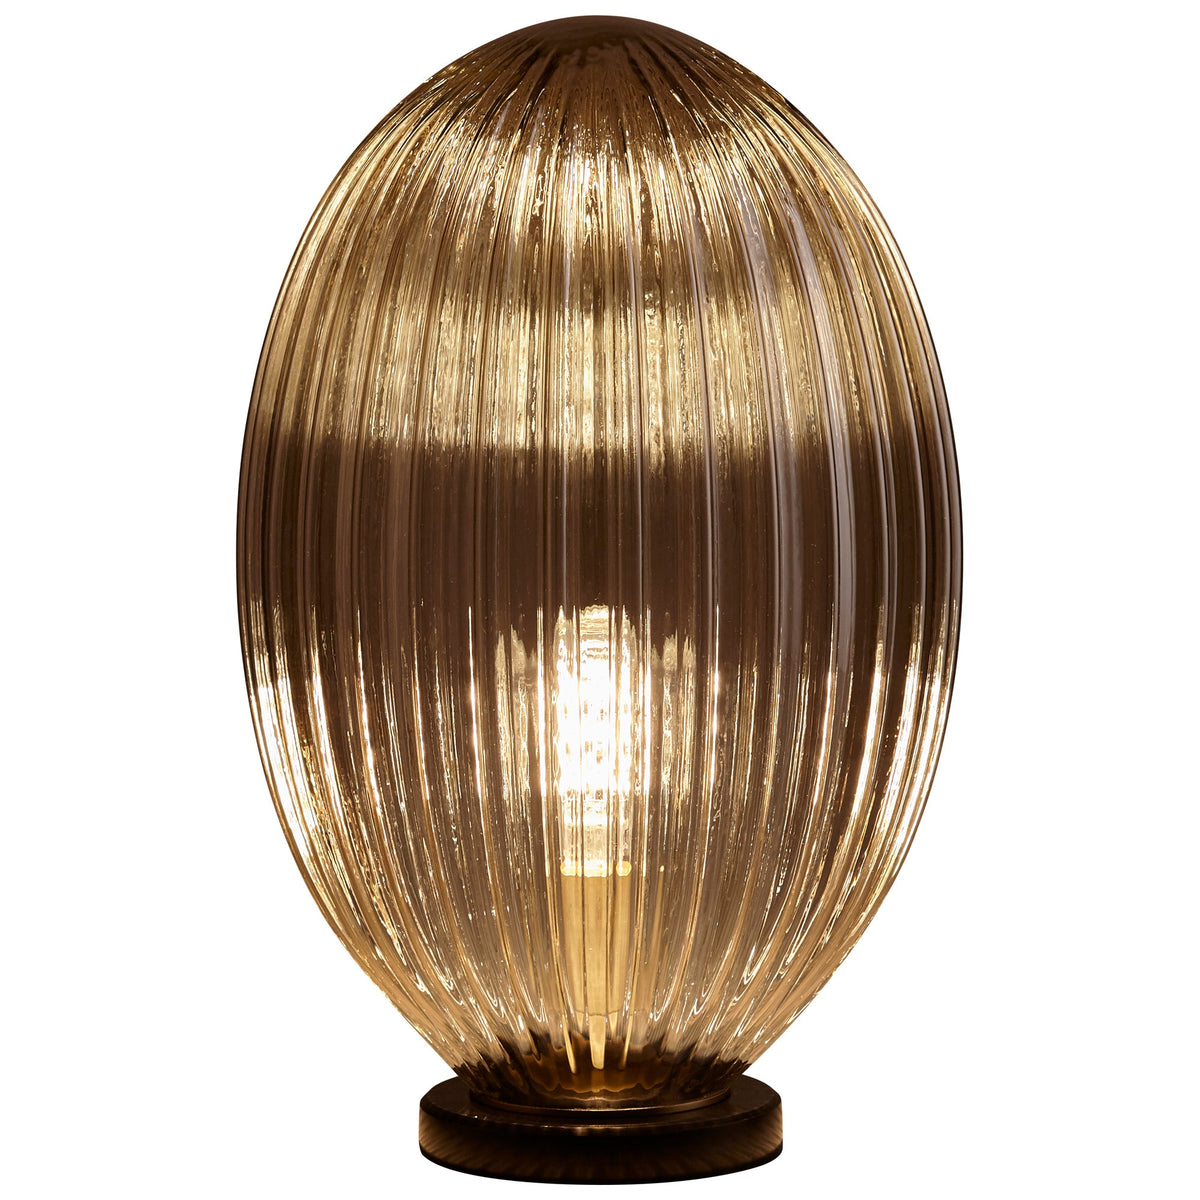 Maxima Lamp | Aged Brass by Cyan